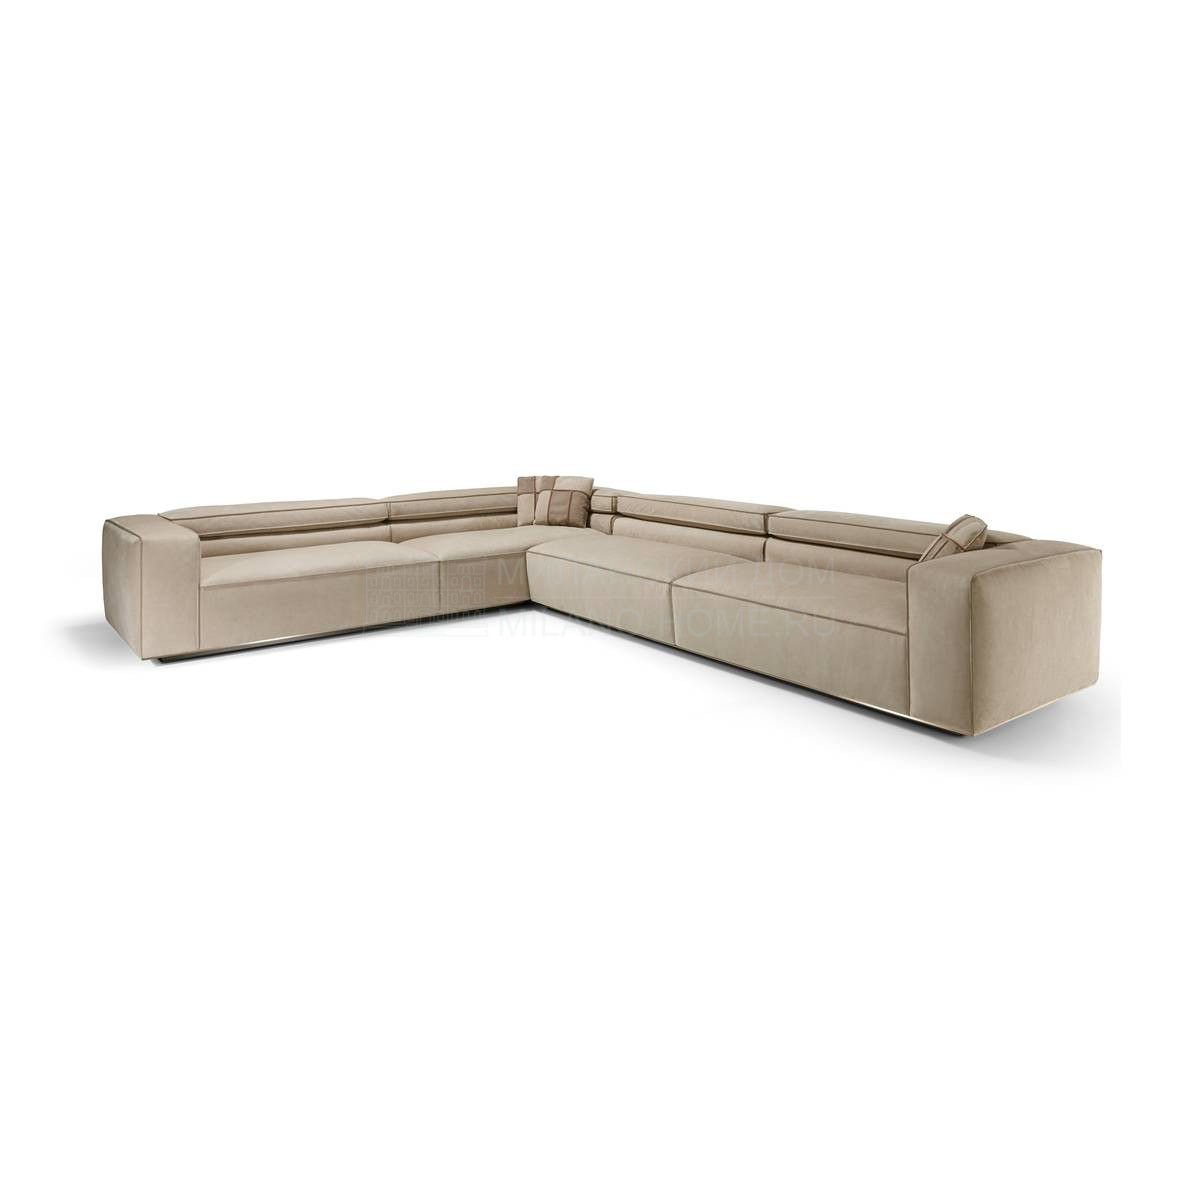 Угловой диван Orlando corner sofa из Италии фабрики IPE CAVALLI VISIONNAIRE